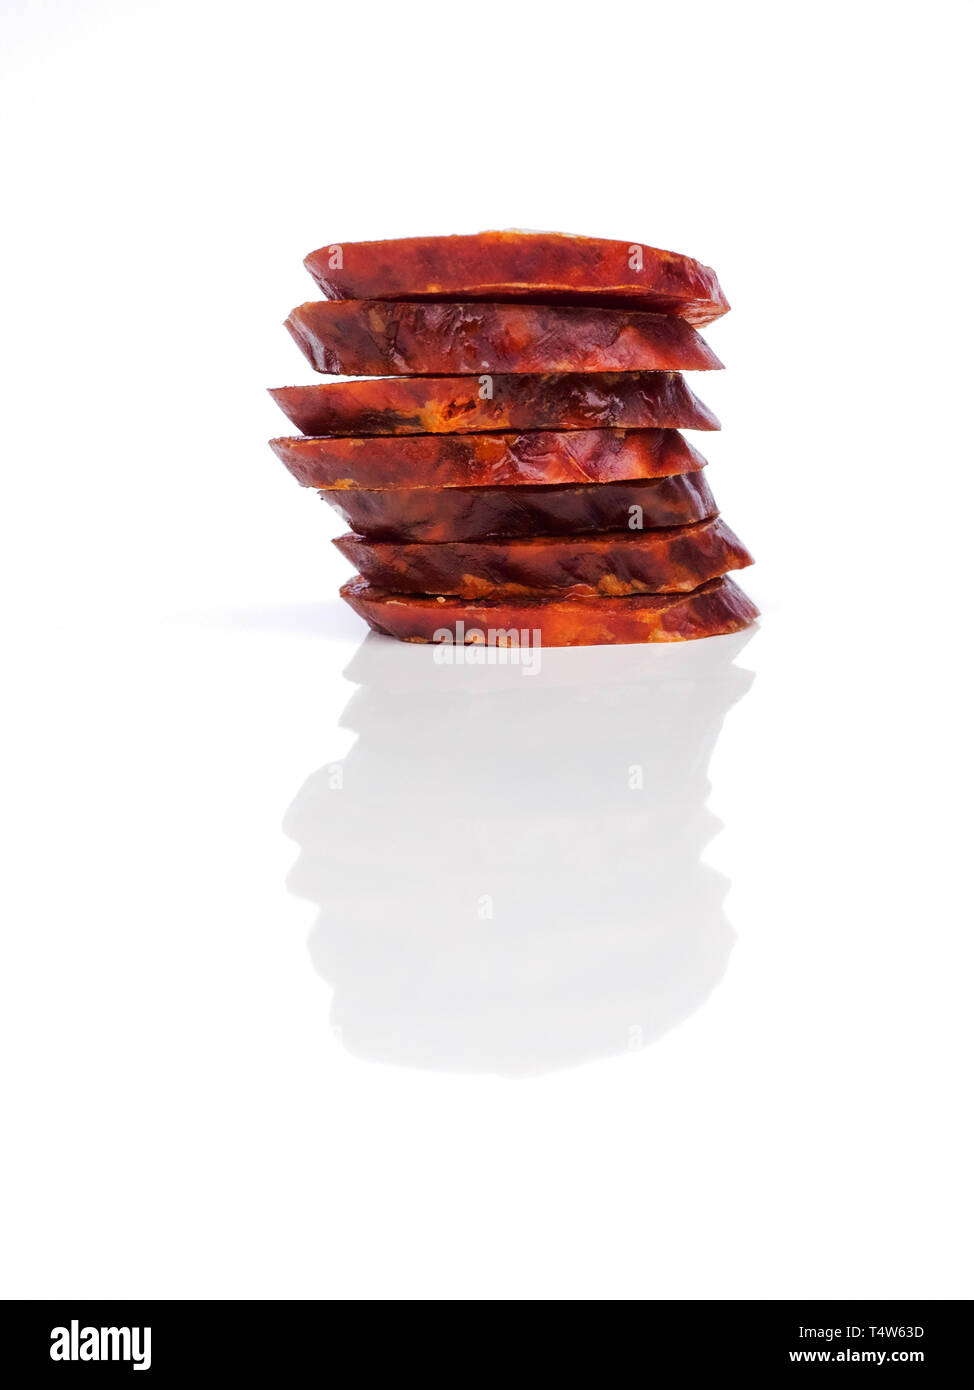 Chorizo ibérique, ​​Or la saucisse chorizo espagnol espagnol couper en rondelles placées l'une sur l'autre sur un fond blanc, typique espagnol tapa Banque D'Images